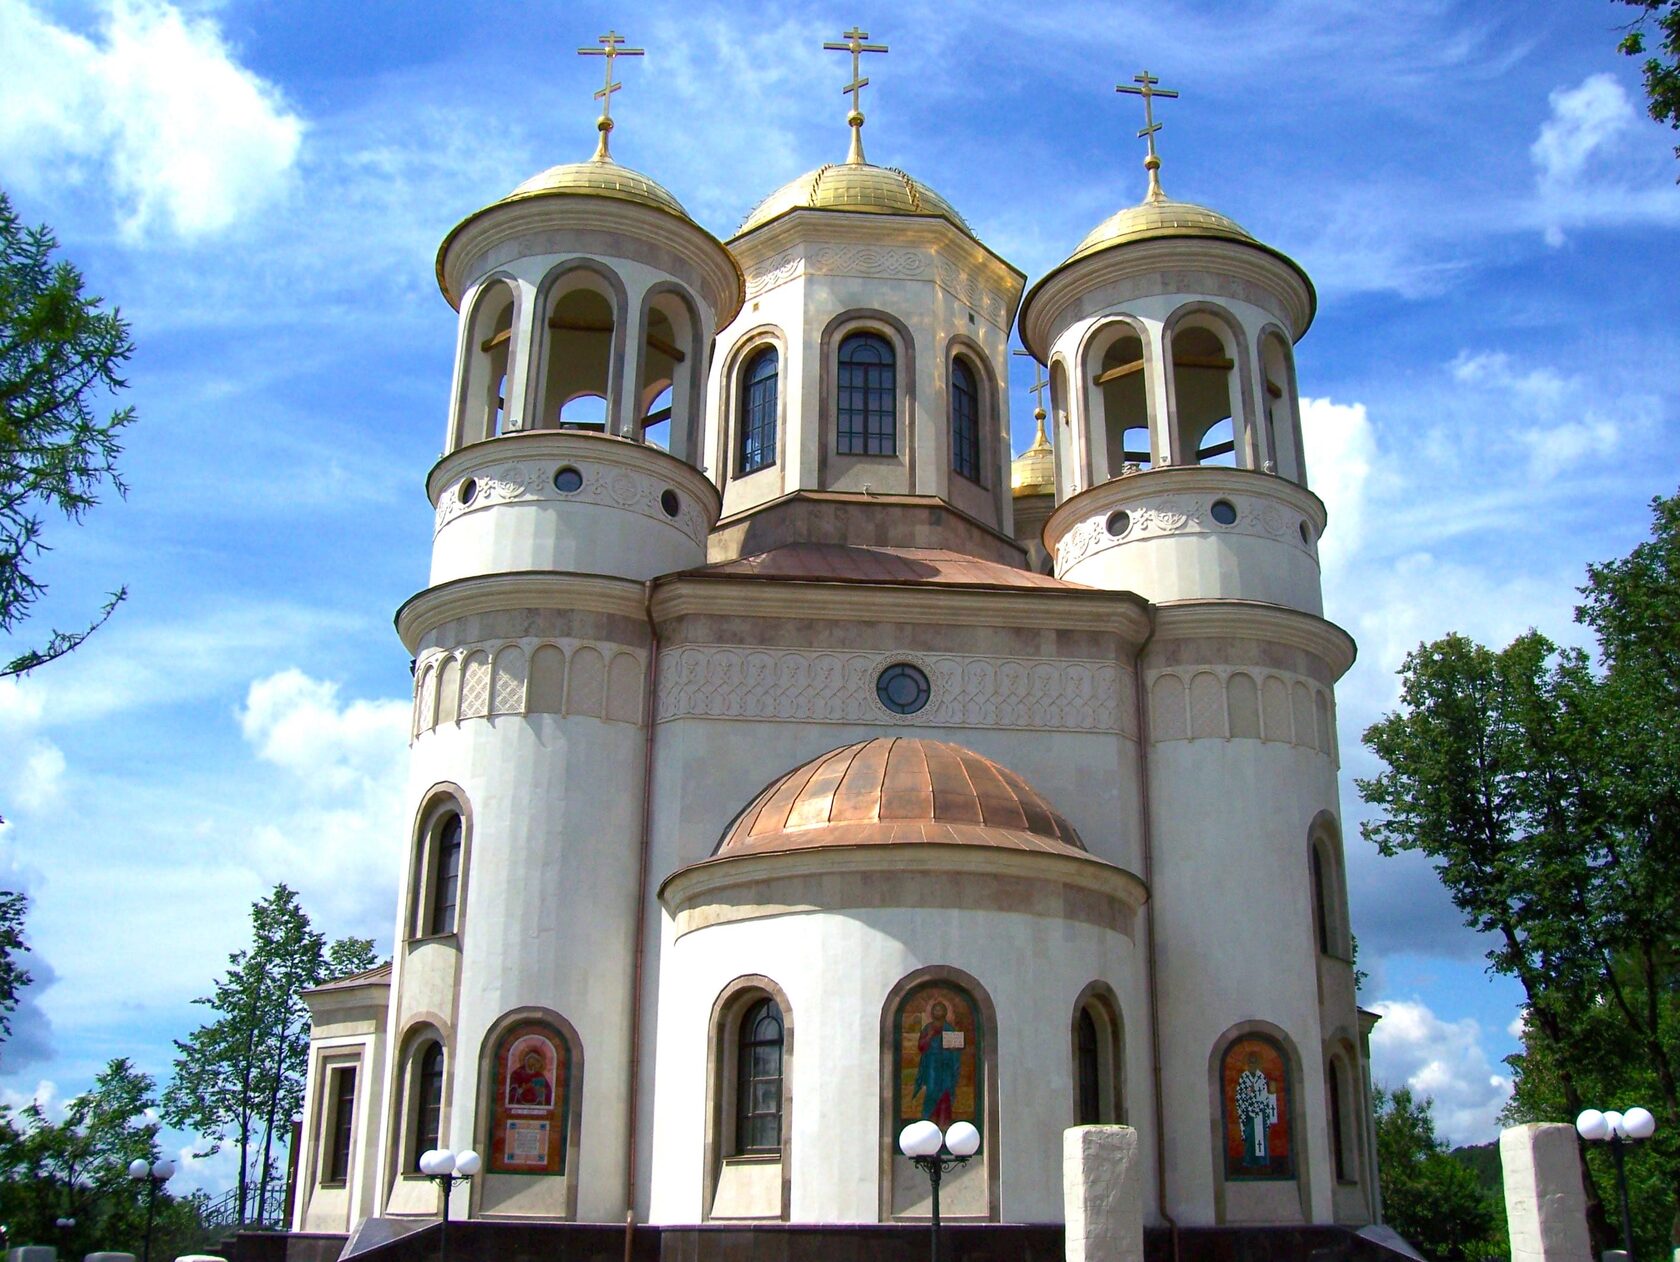 Церковный купол, который с 50-х прятали от коммунистов на кладбище, водрузят на часовню